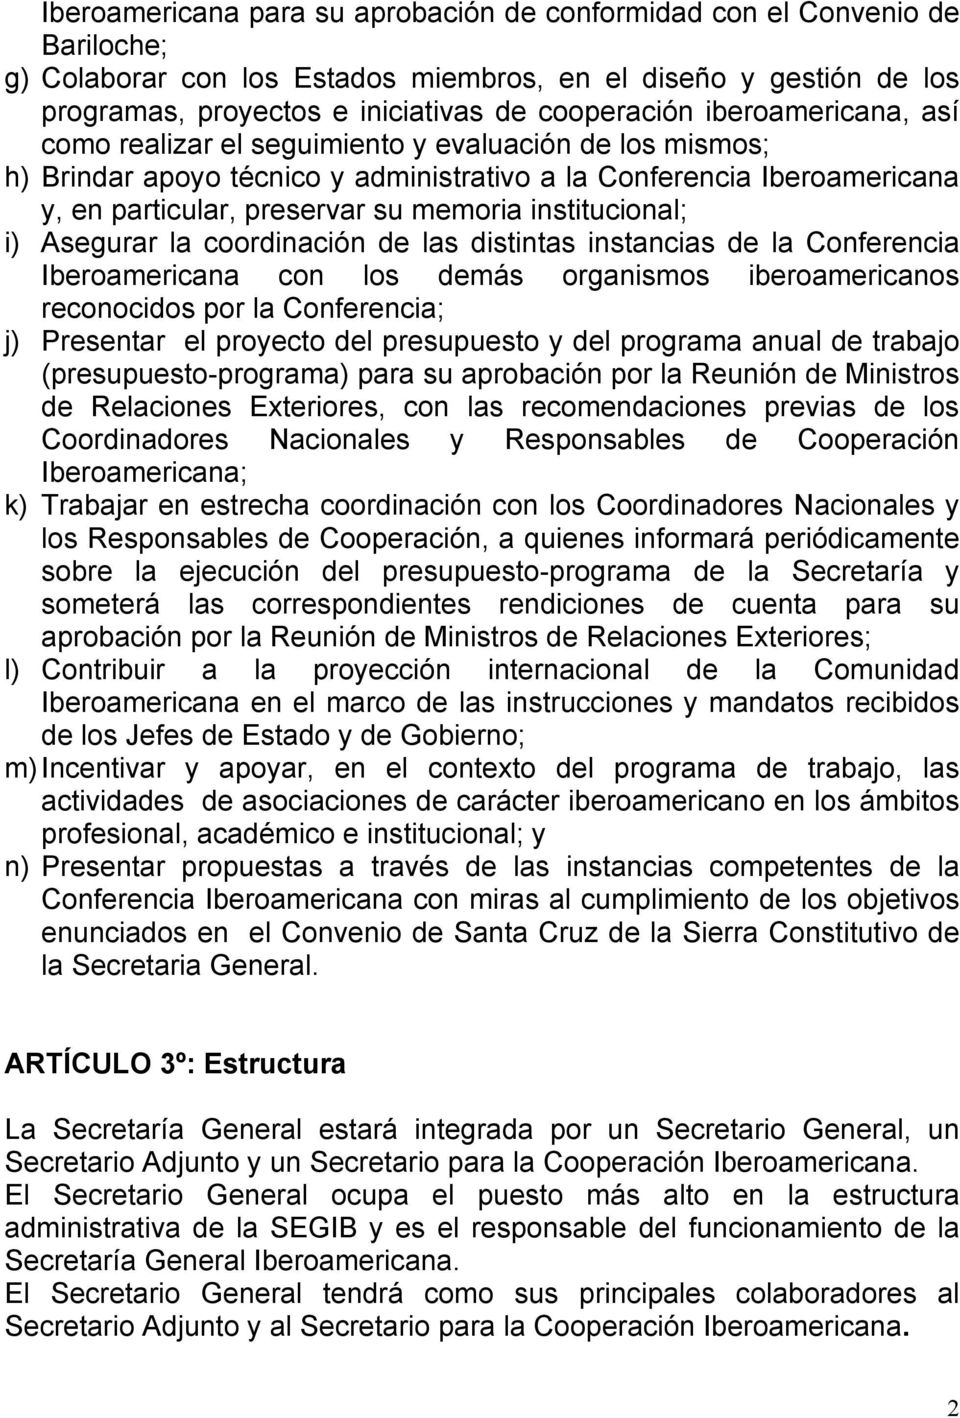 institucional; i) Asegurar la coordinación de las distintas instancias de la Conferencia Iberoamericana con los demás organismos iberoamericanos reconocidos por la Conferencia; j) Presentar el